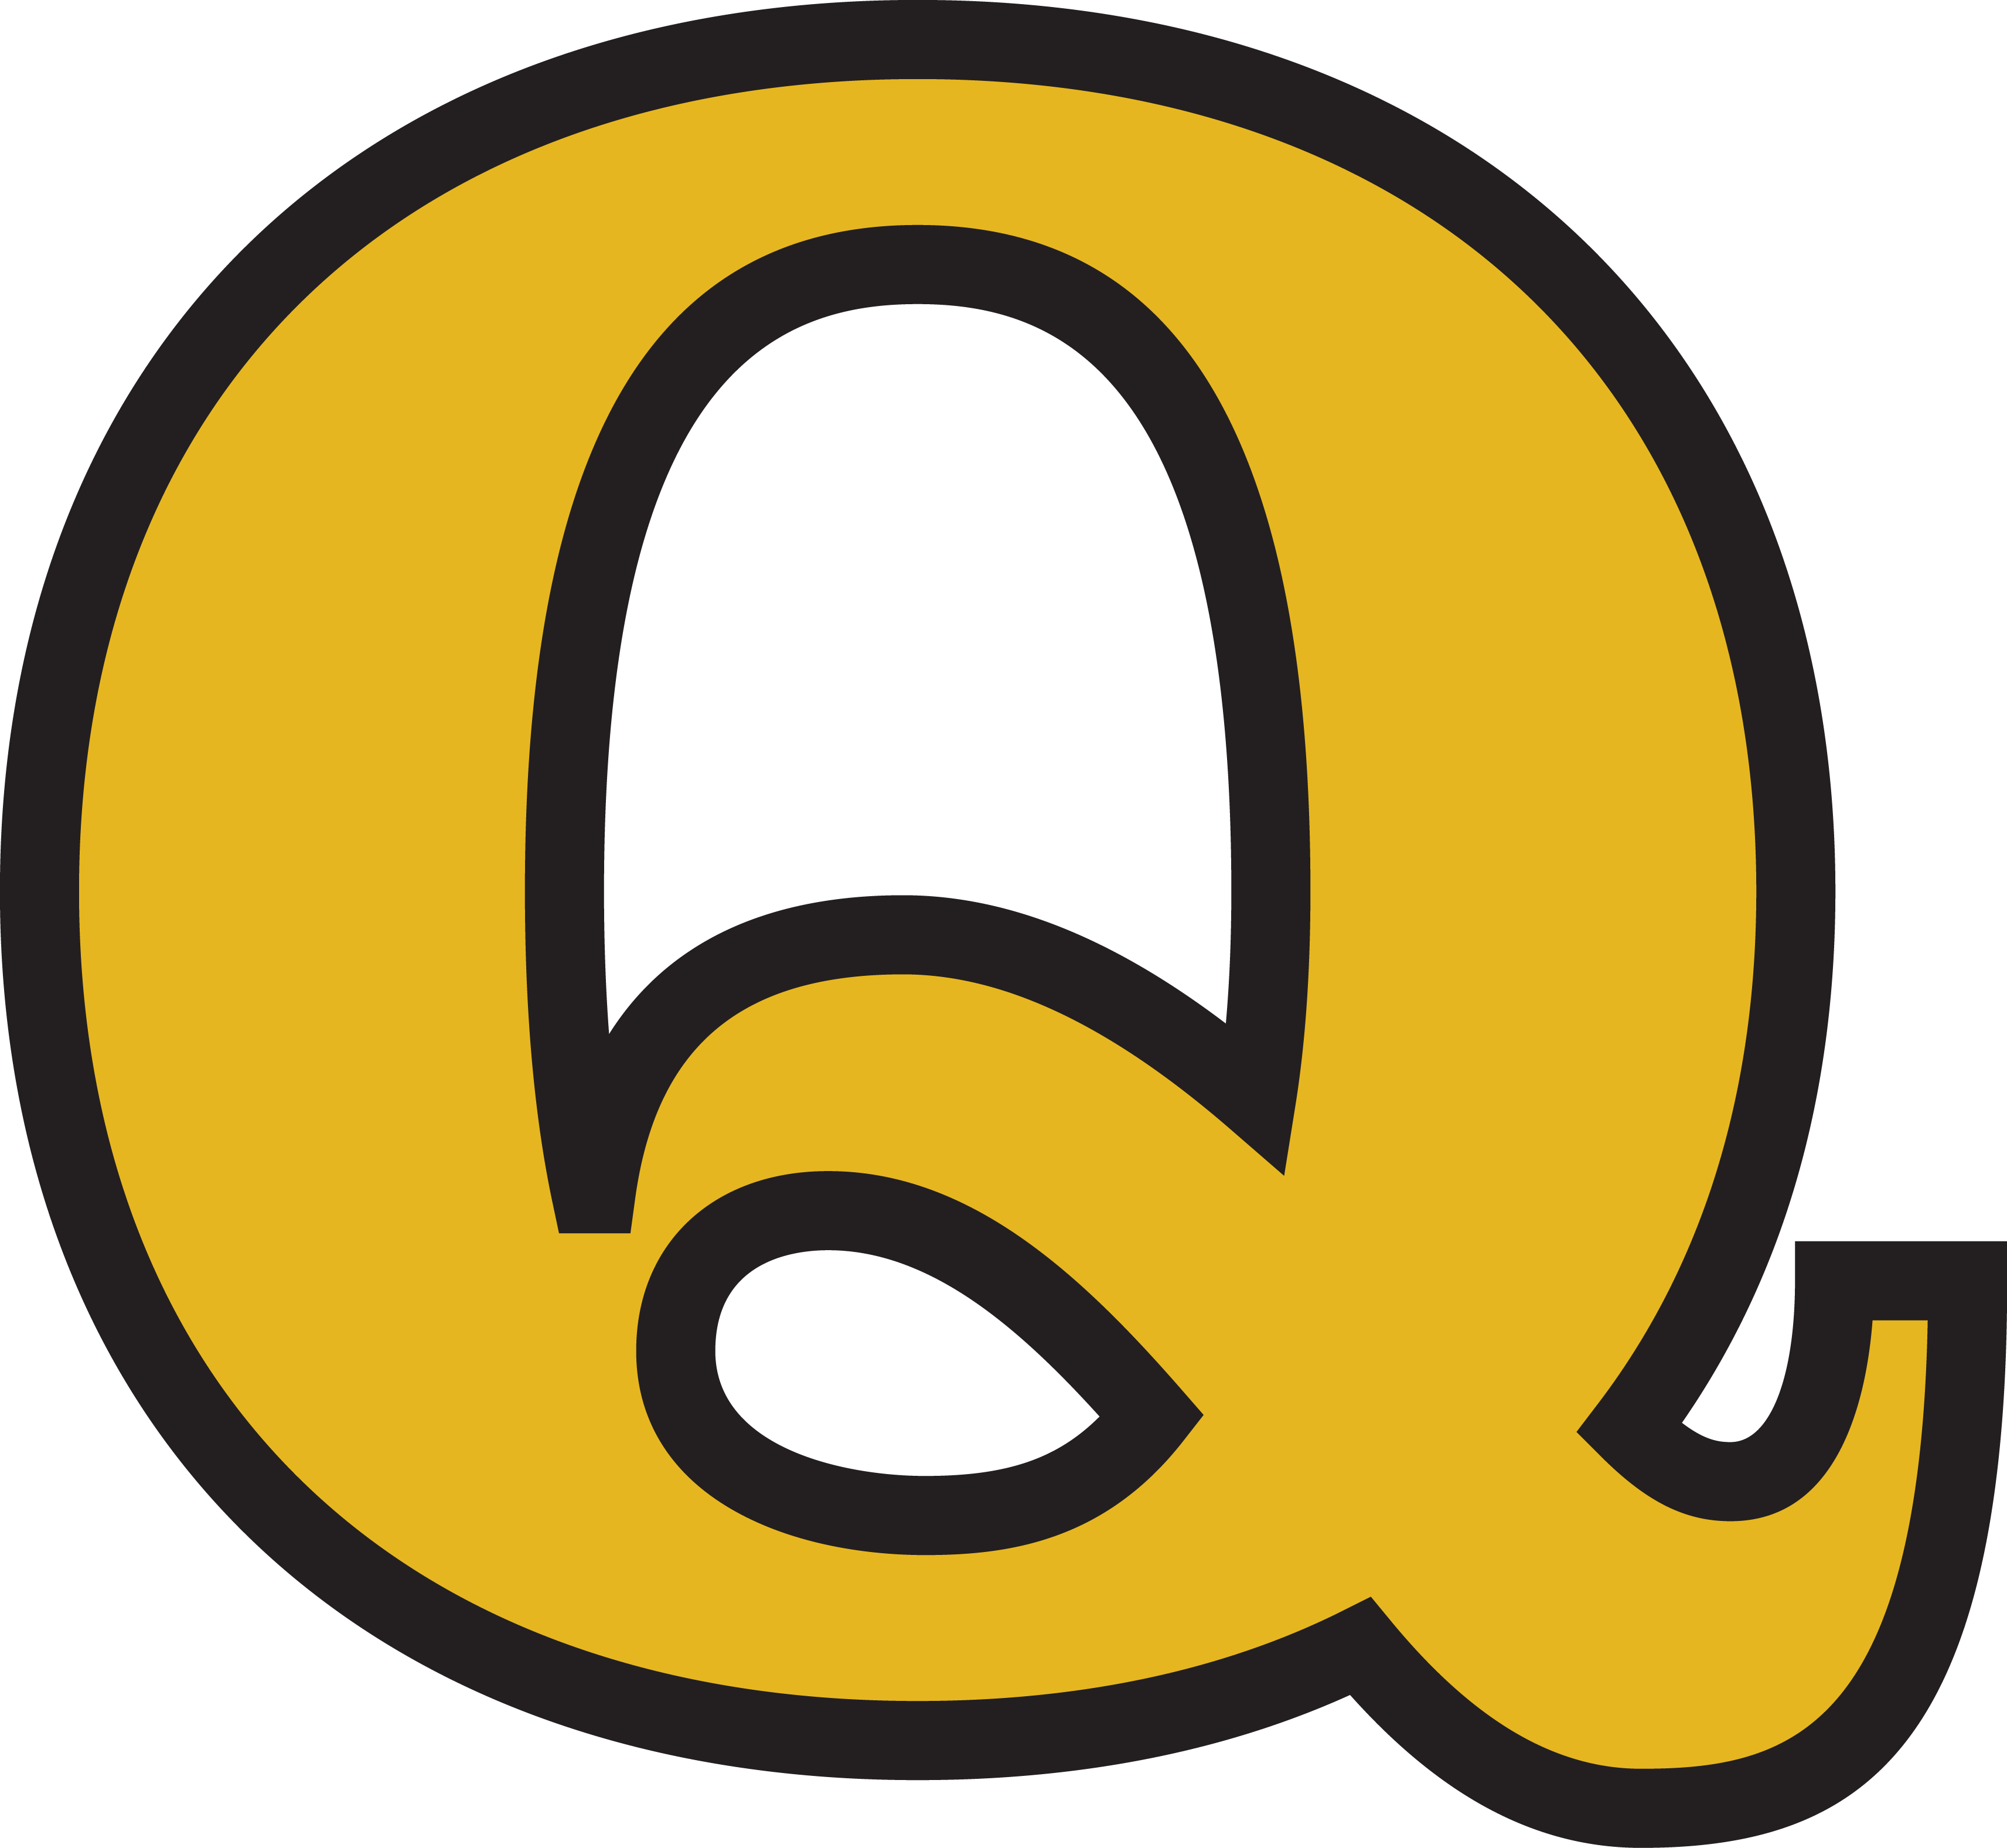 Der Buchstabe Q